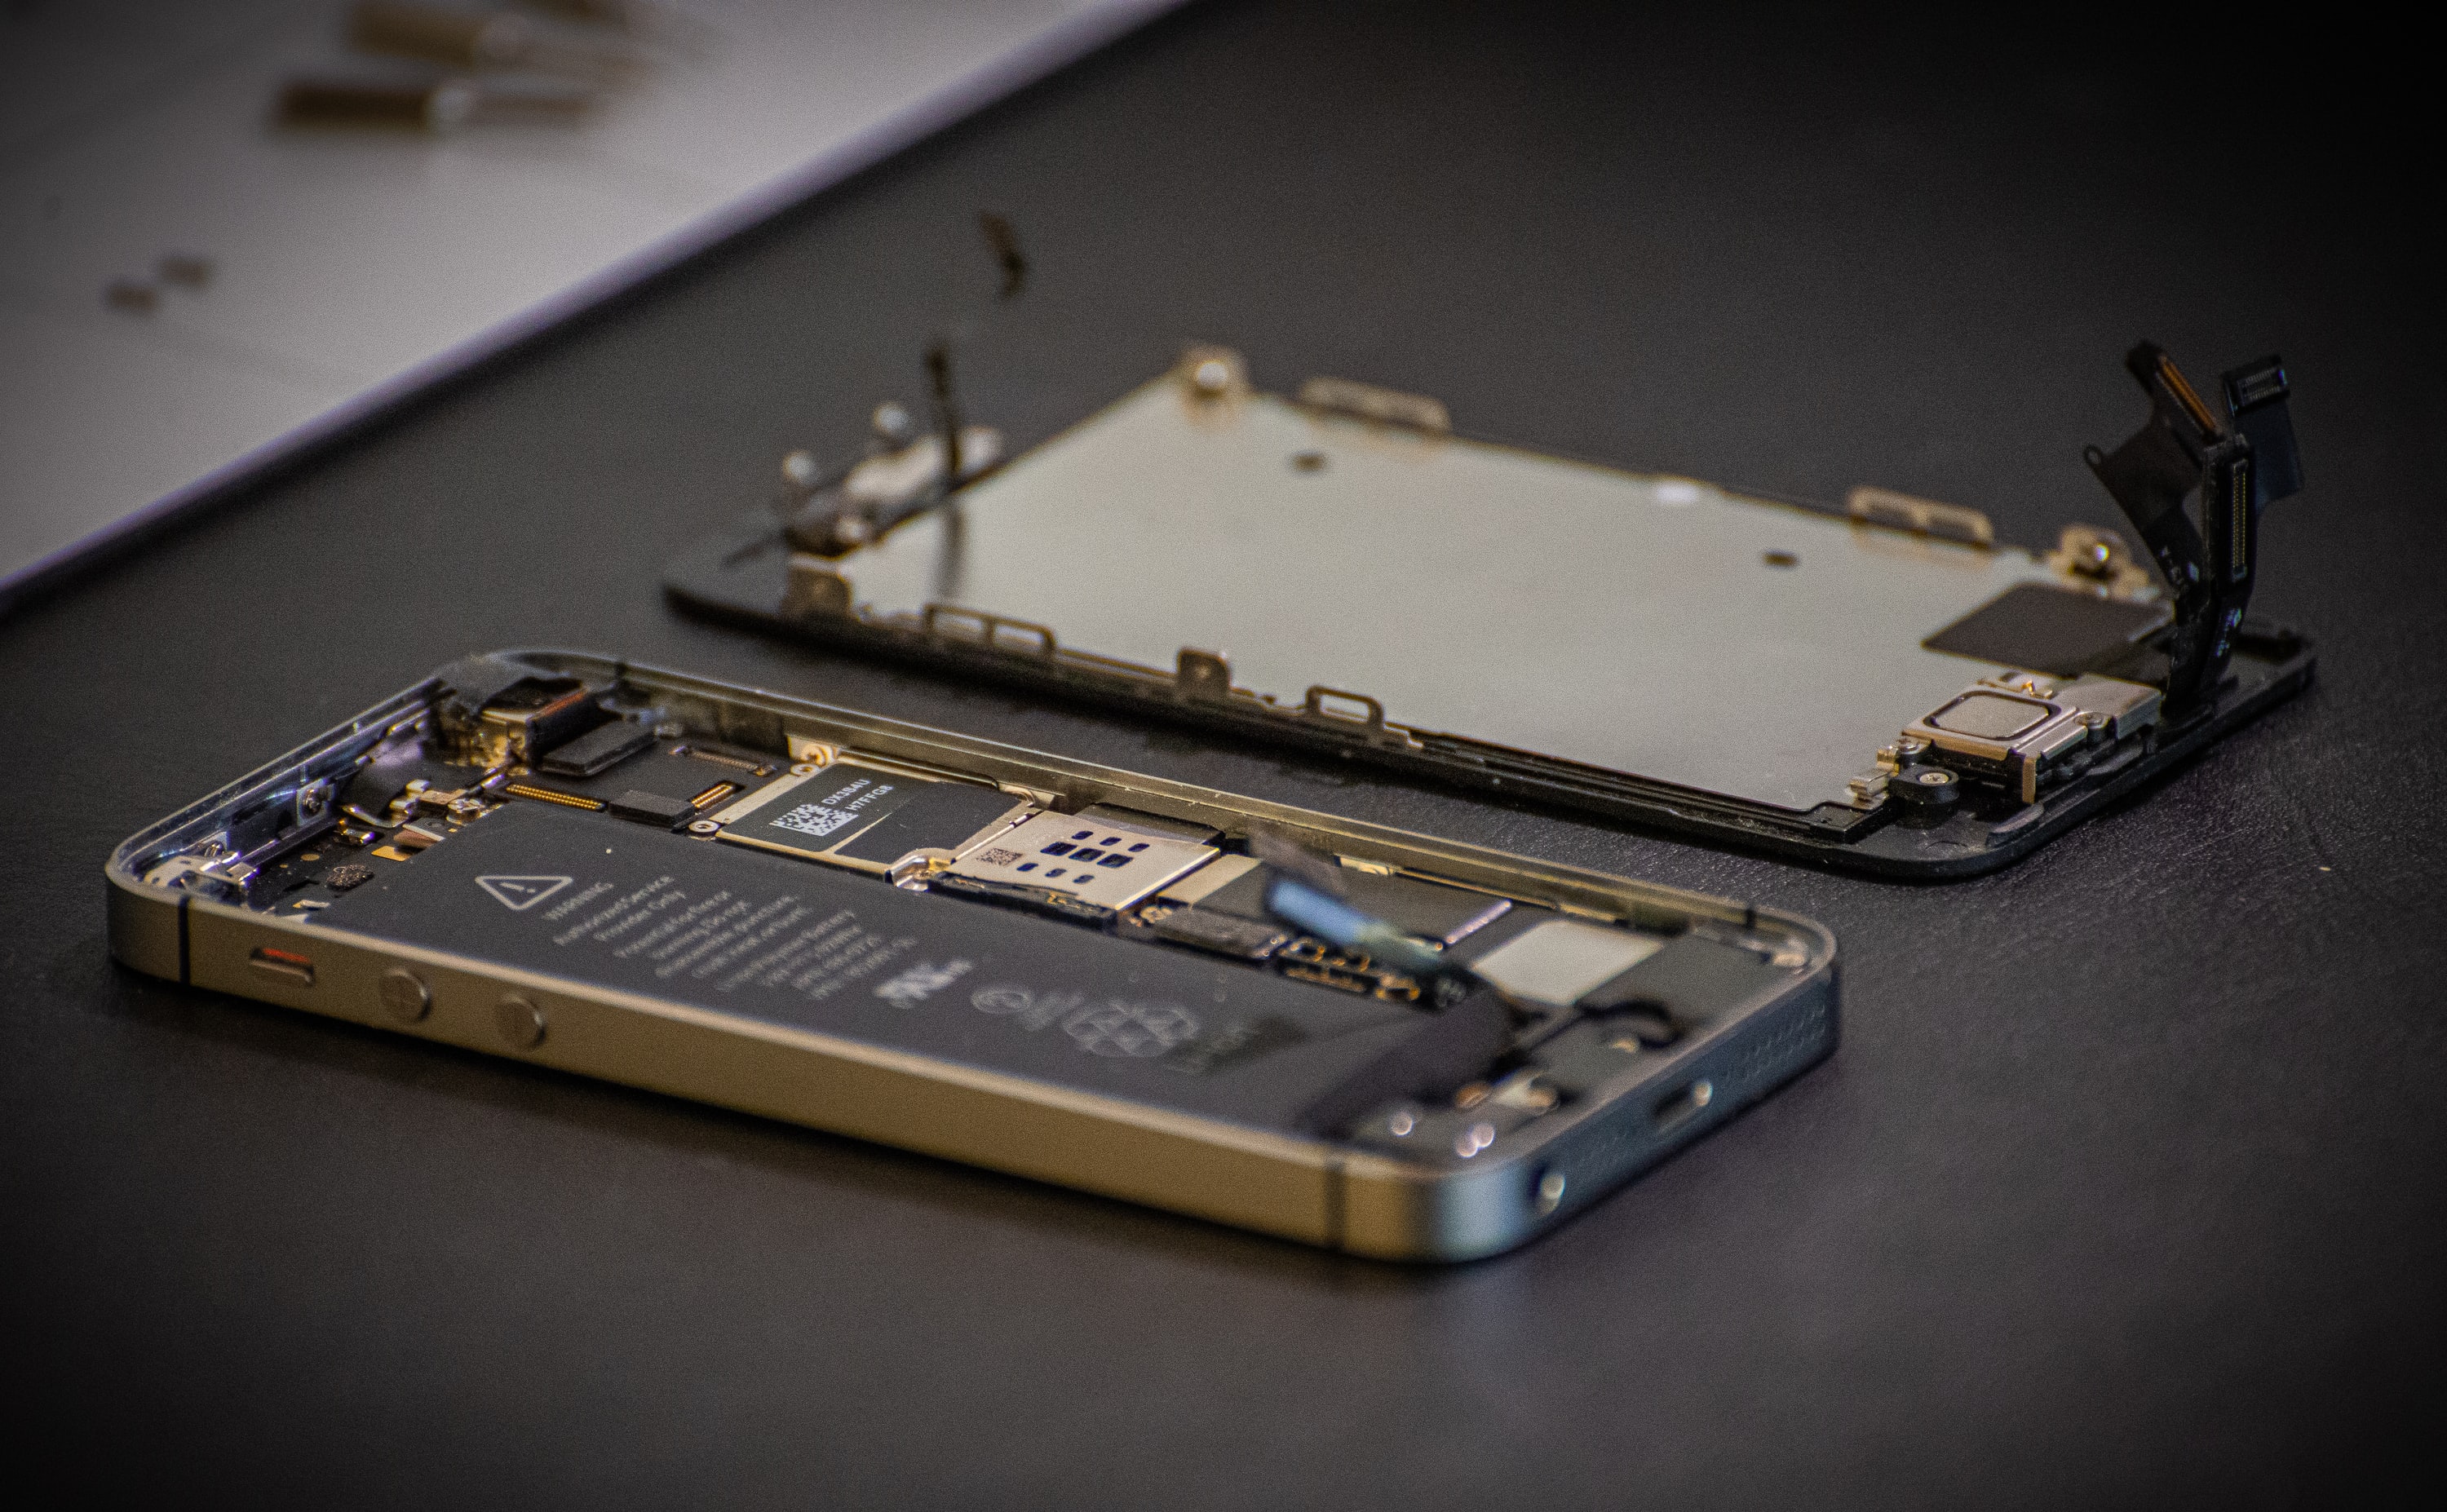 An iPhone under repair.